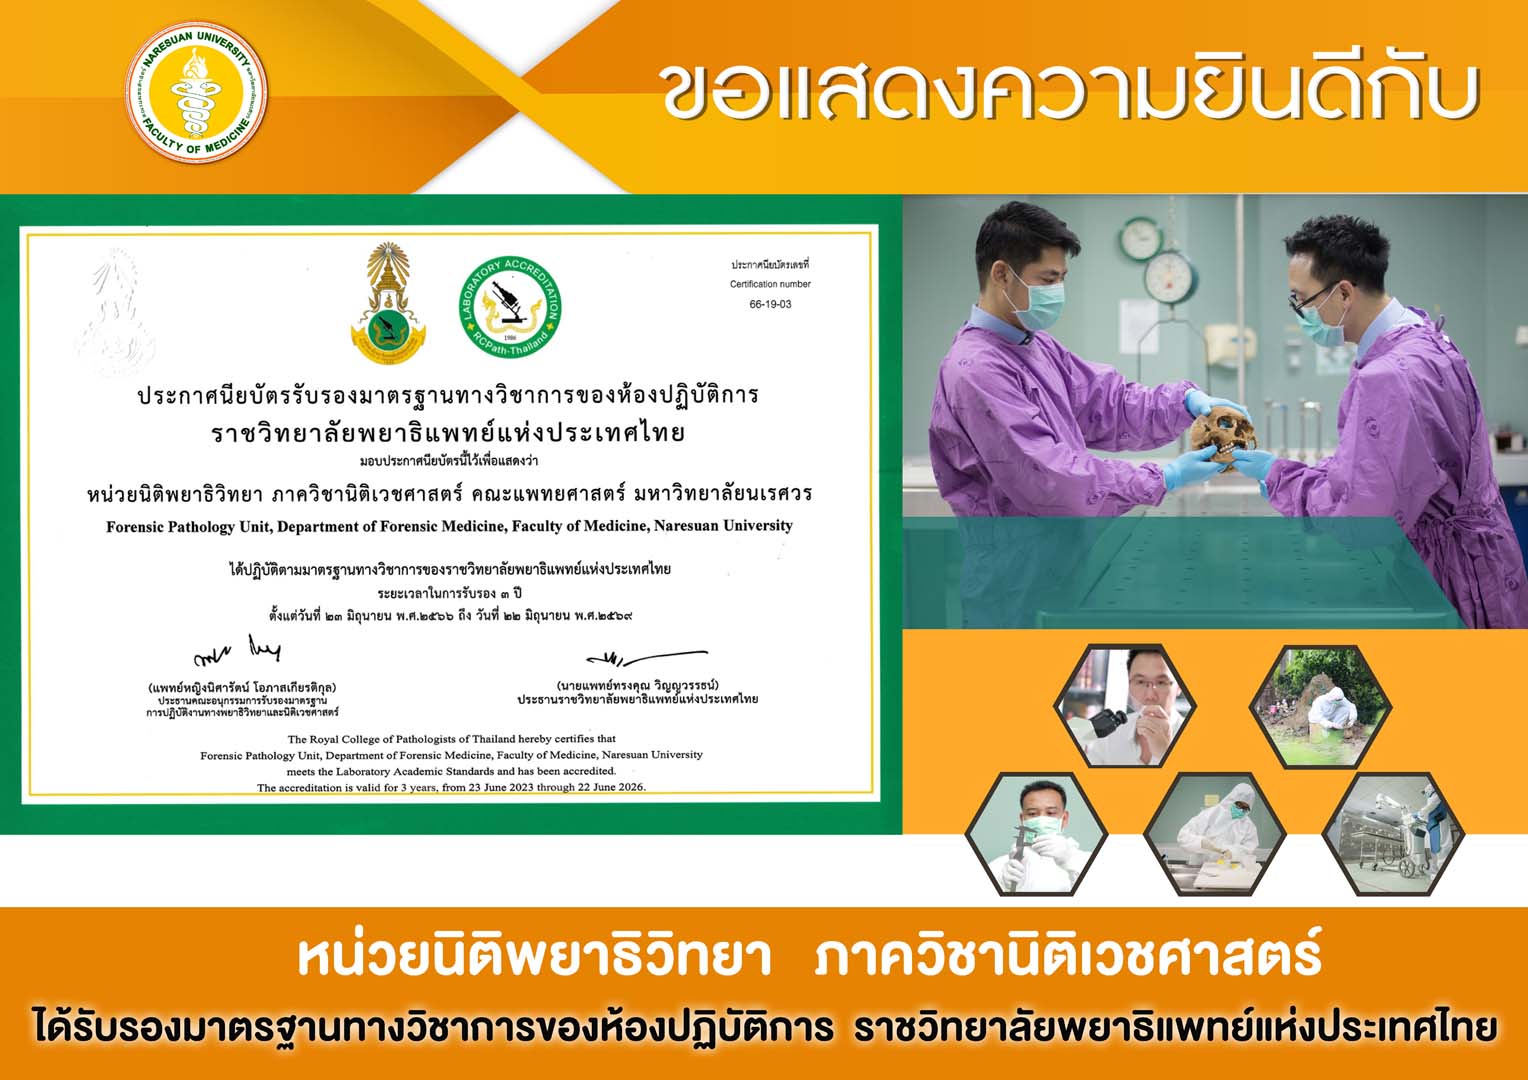 ขอแสดงความยินดีกับ หน่วยนิติพยาธิวิทยา ภาควิชานิติเวชศาสตร์ ได้รับรองมาตรฐานทางวิชาการของห้องปฏิบัติการ ราชวิทยาลัยพยาธิแพทย์แห่งประเทศไทย